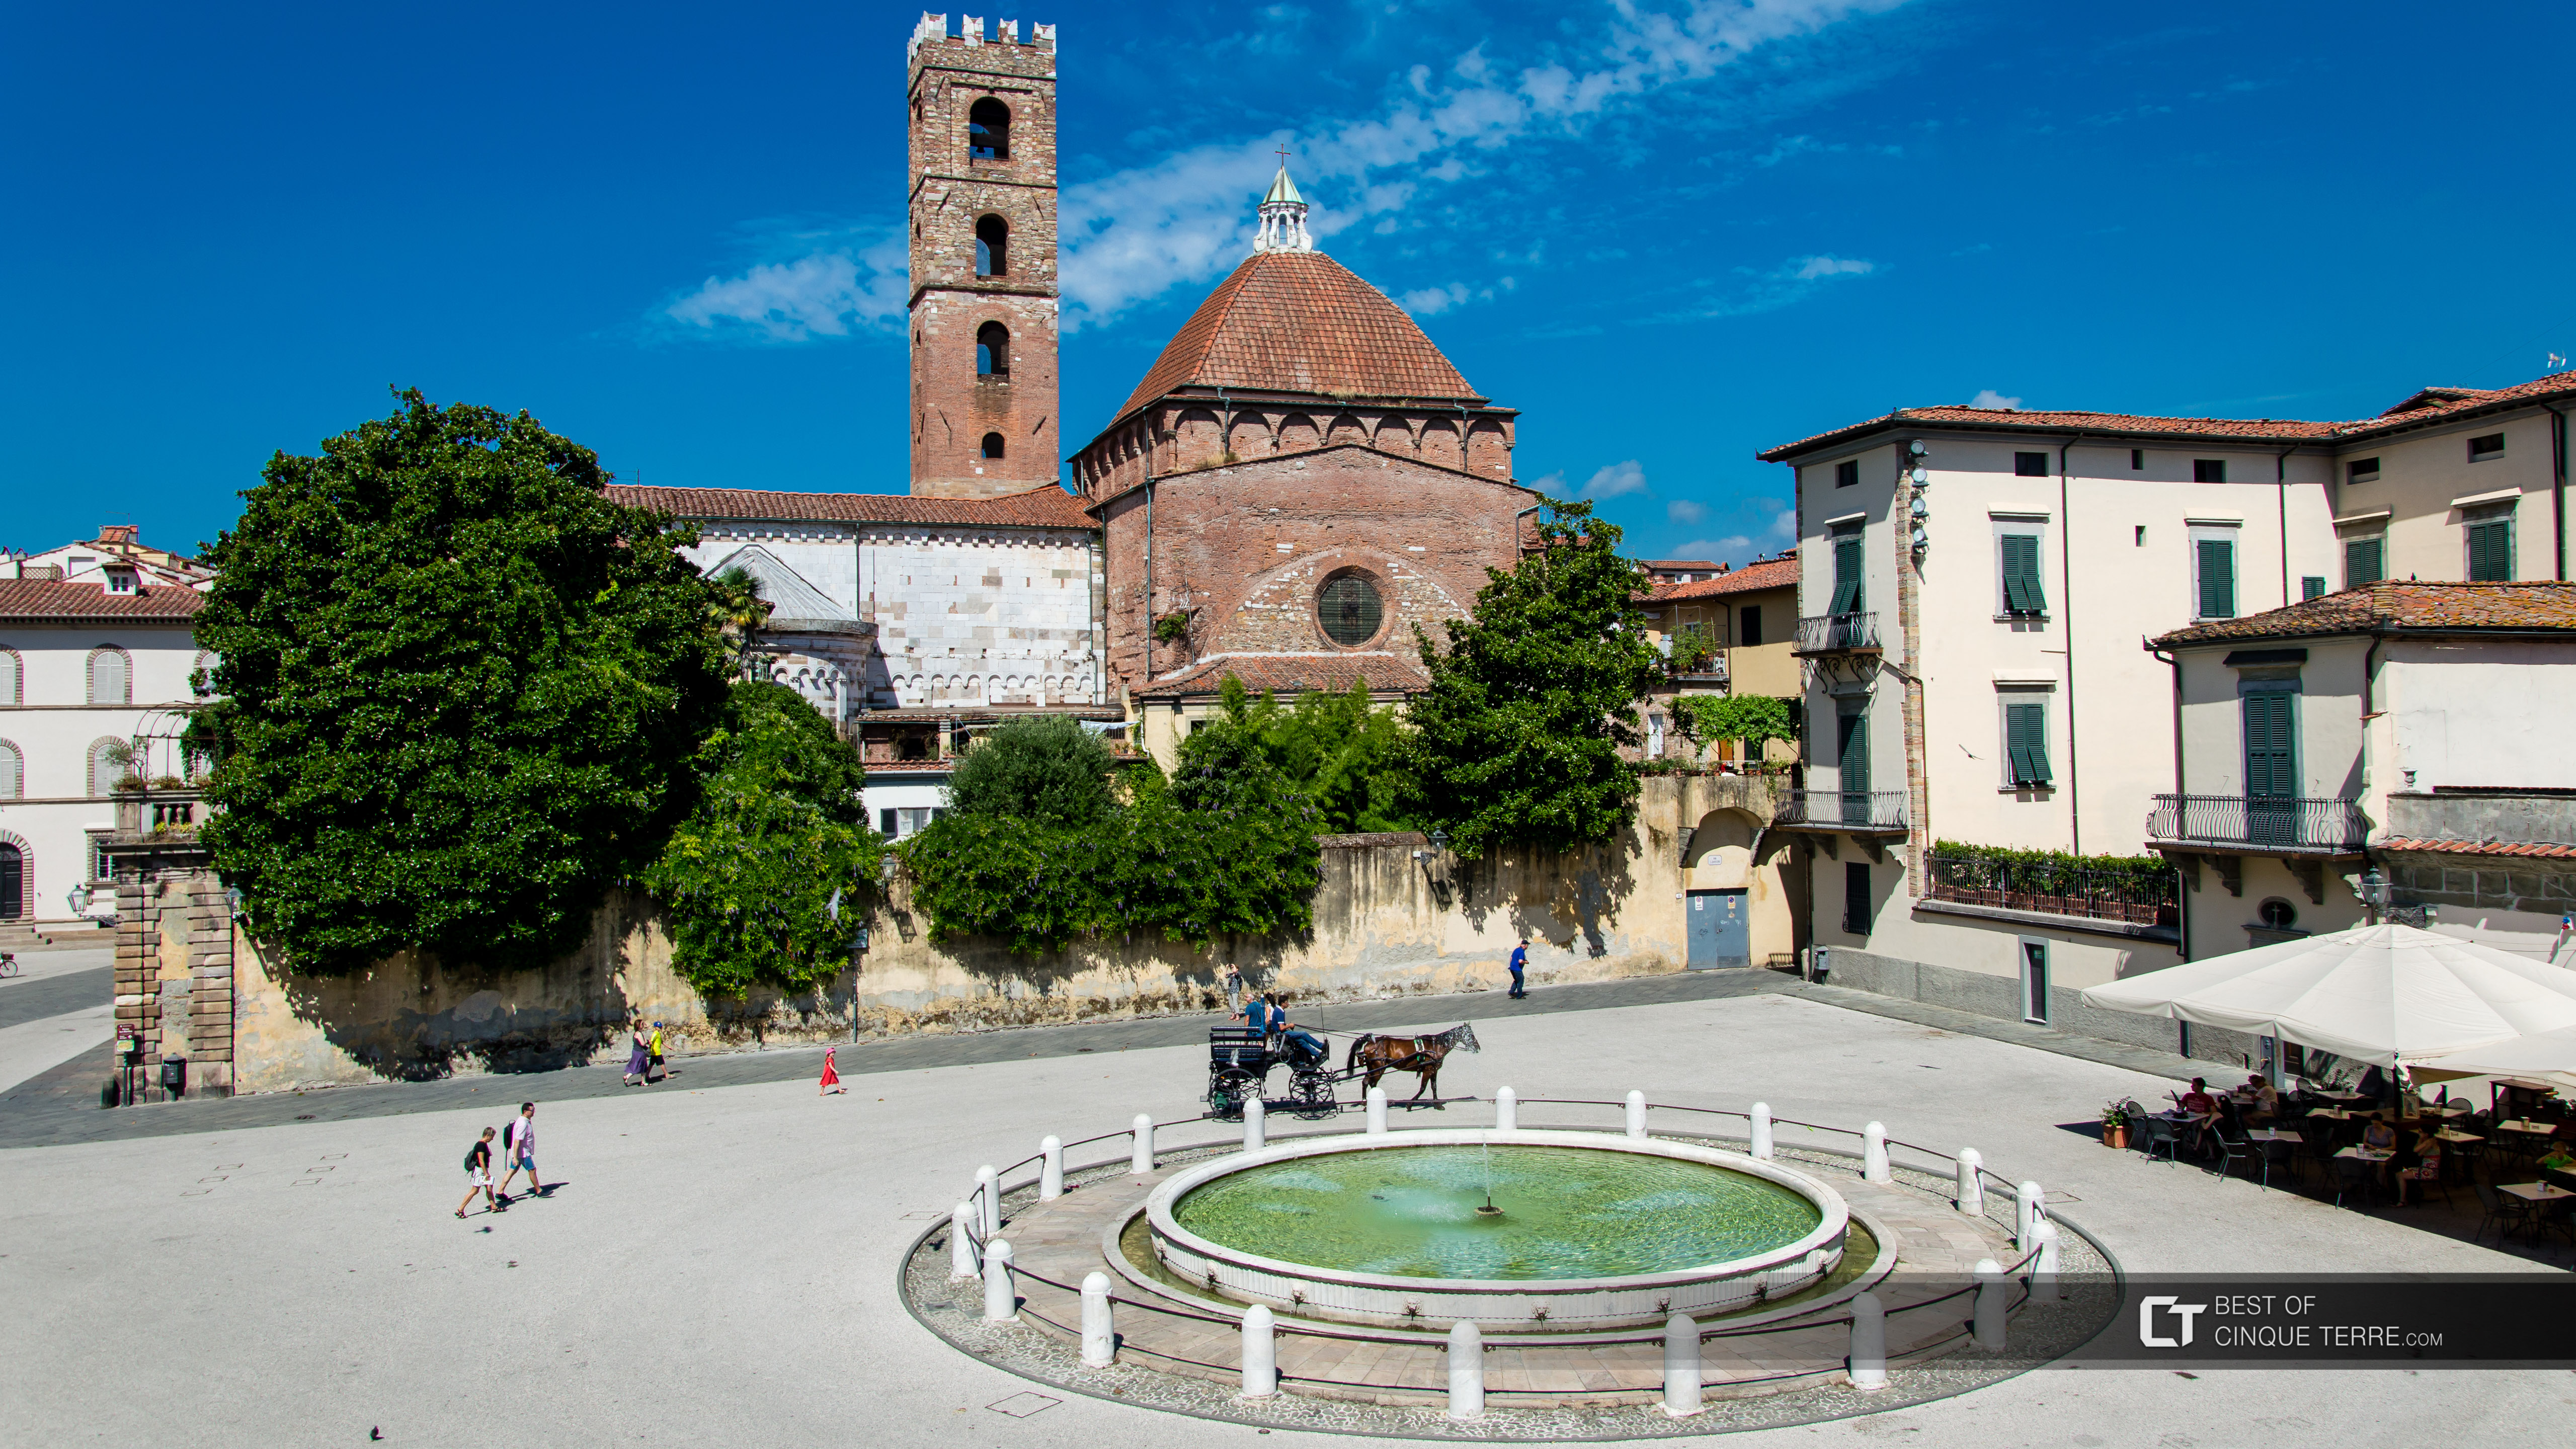 Площадь Антельминелли и Колокольня церкви Санти-Джованни-э-Репарата, Лукка, Италия